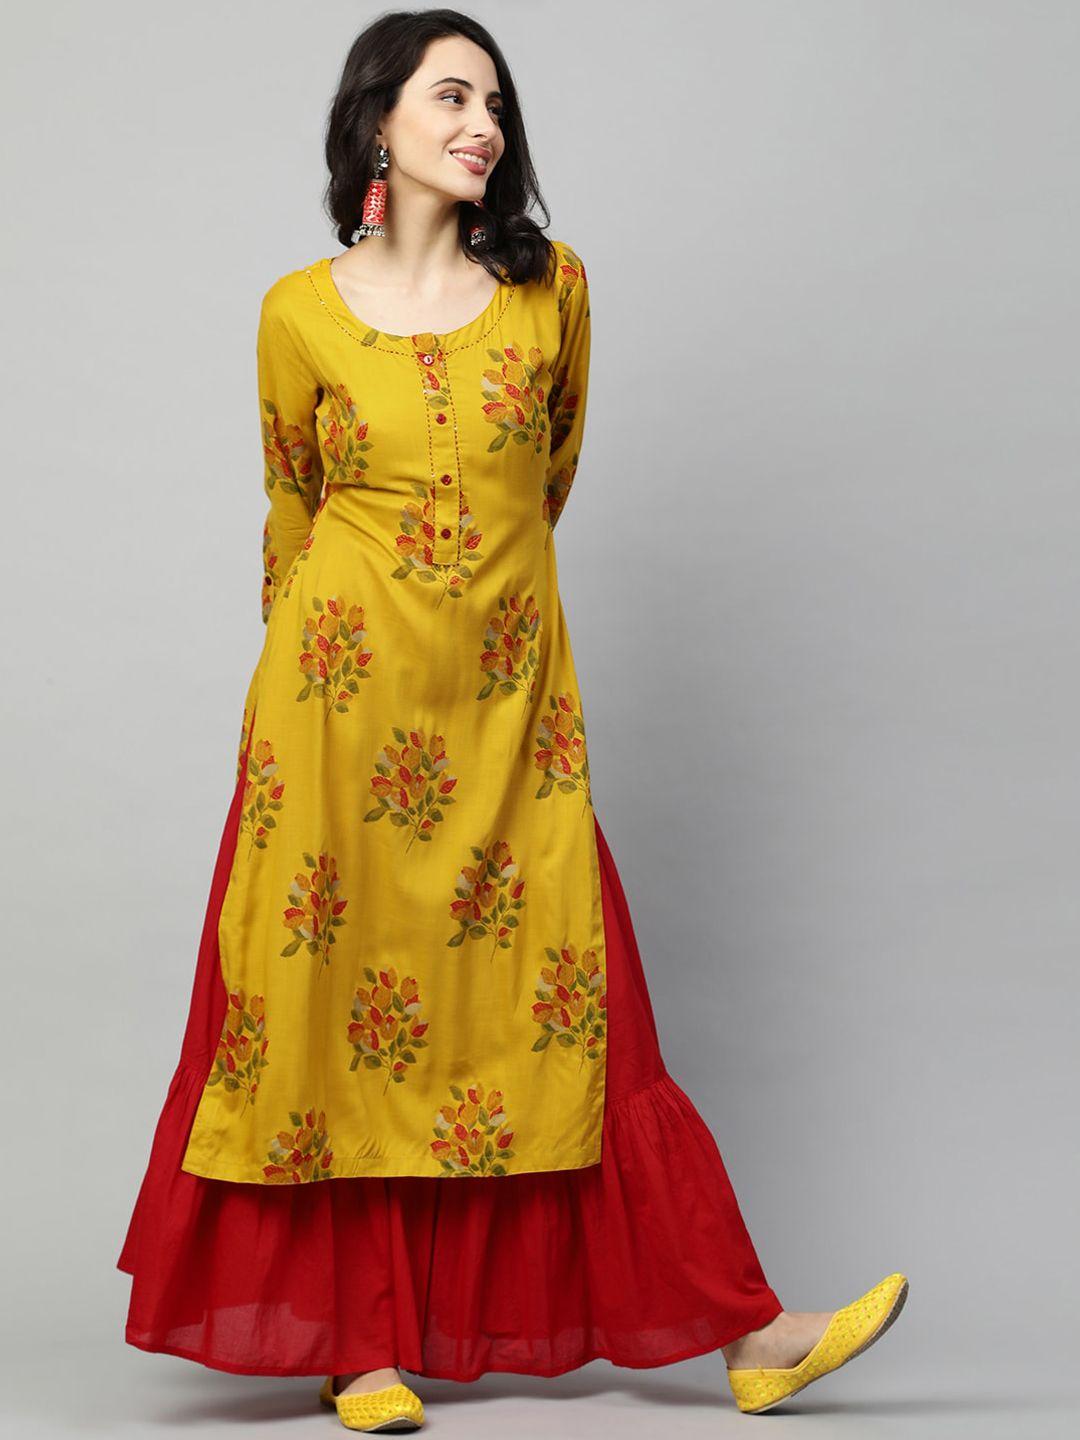 fashor women mustard yellow & red floral printed floral kurta